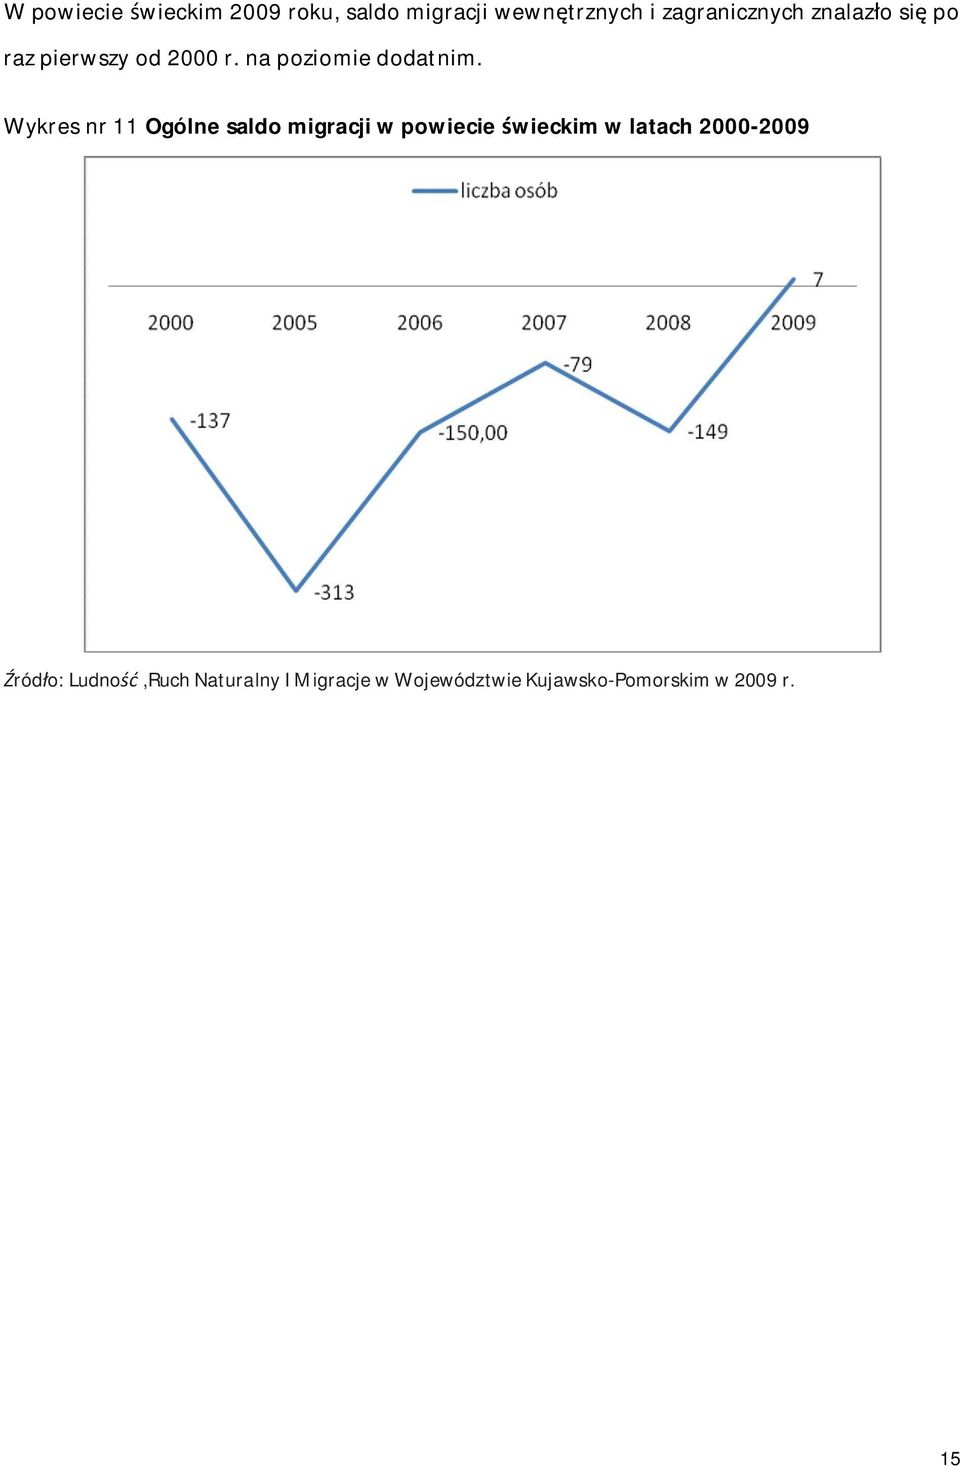 Wykres nr 11 Ogólne saldo migracji w powiecie wieckim w latach 2000-2009